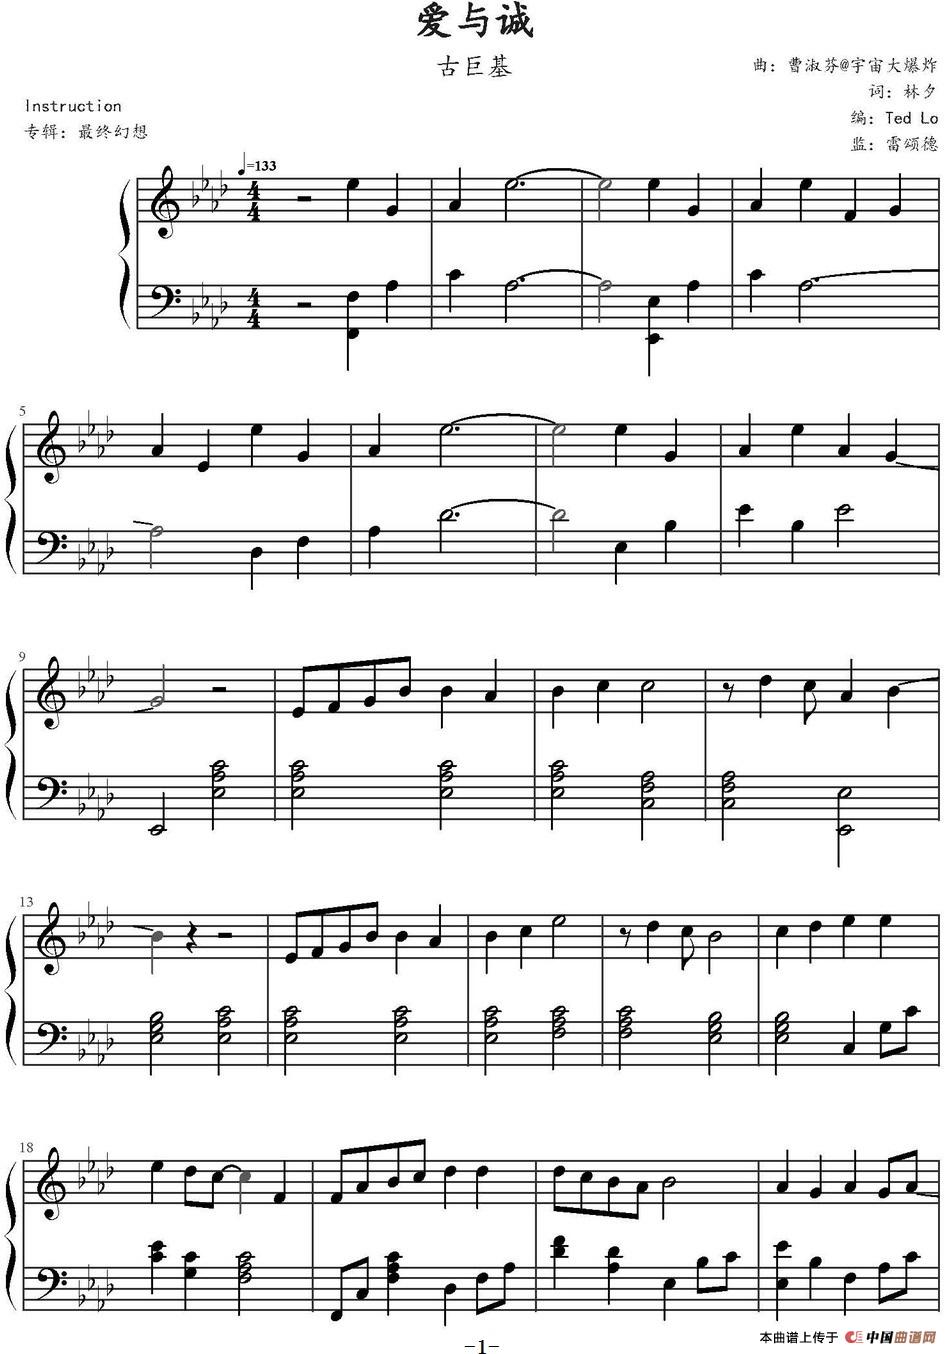 《爱与诚》钢琴曲谱图分享